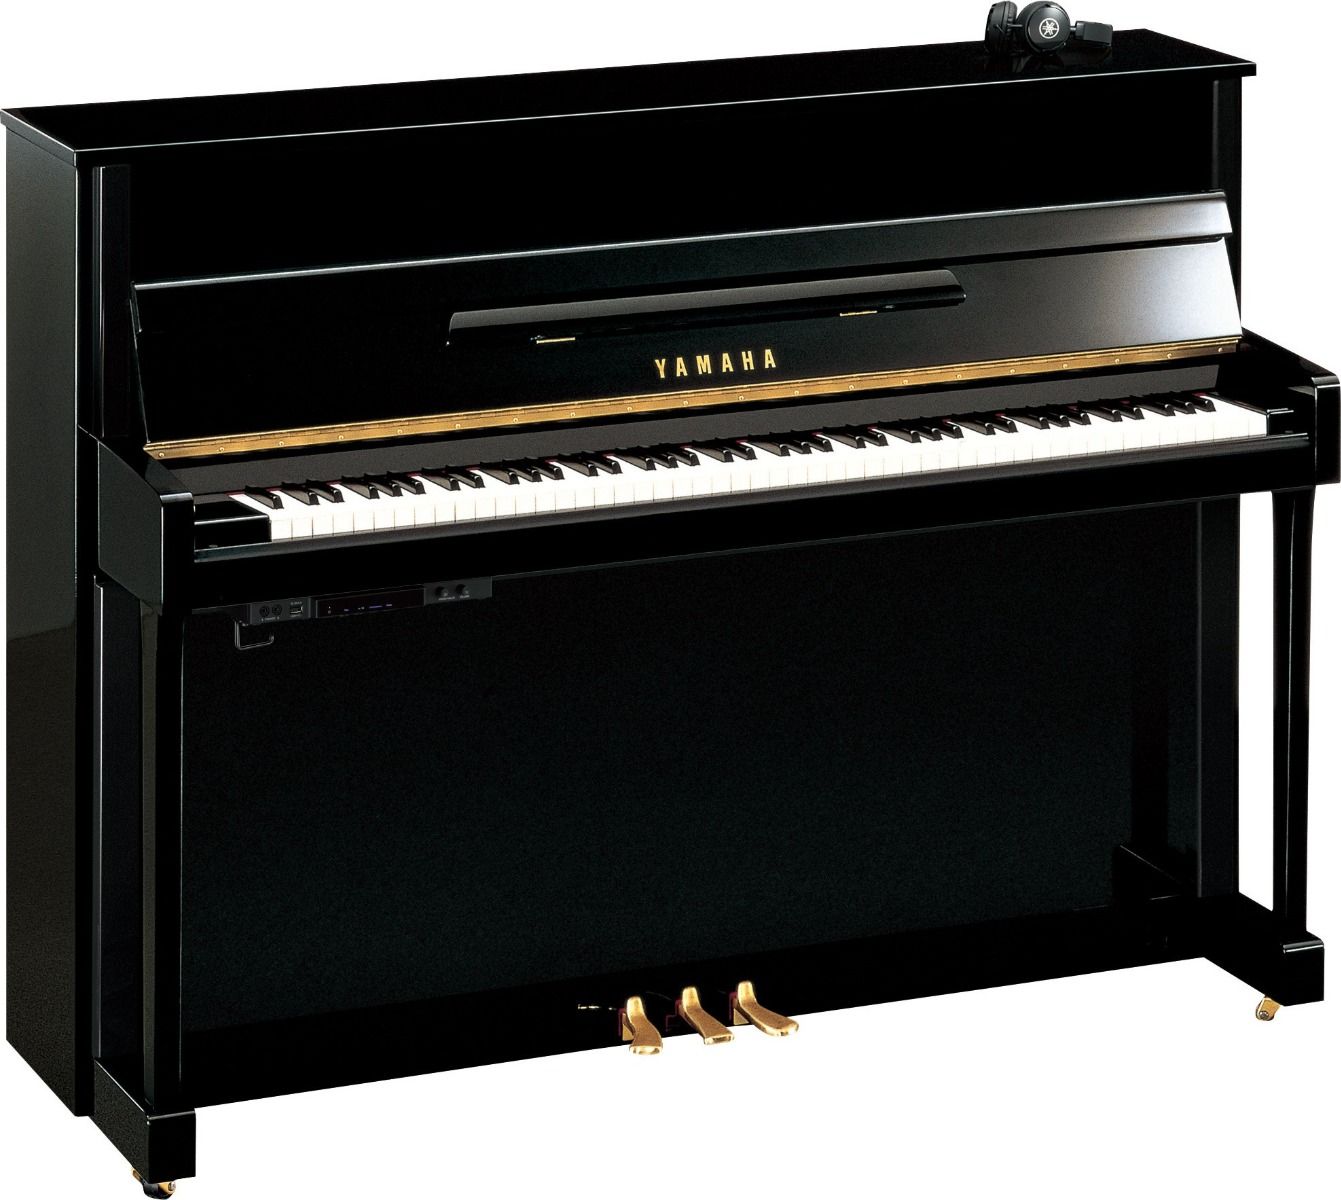 Yamaha b2 45" Silent Upright Piano in Polished Ebony